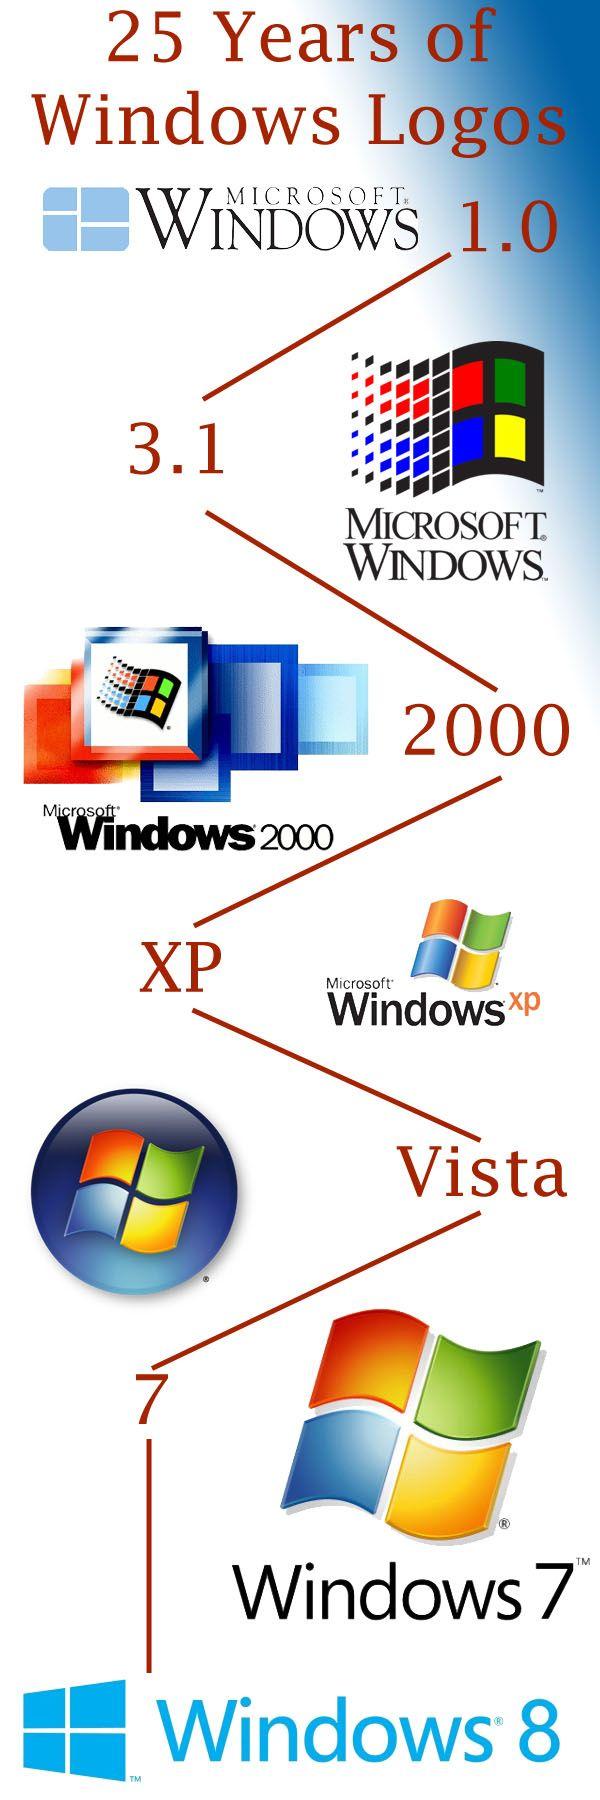 Sweet Windows Logo - Windows 8 ile Microsoft tarihinin en başına 1.0'a dönmüş :) IT